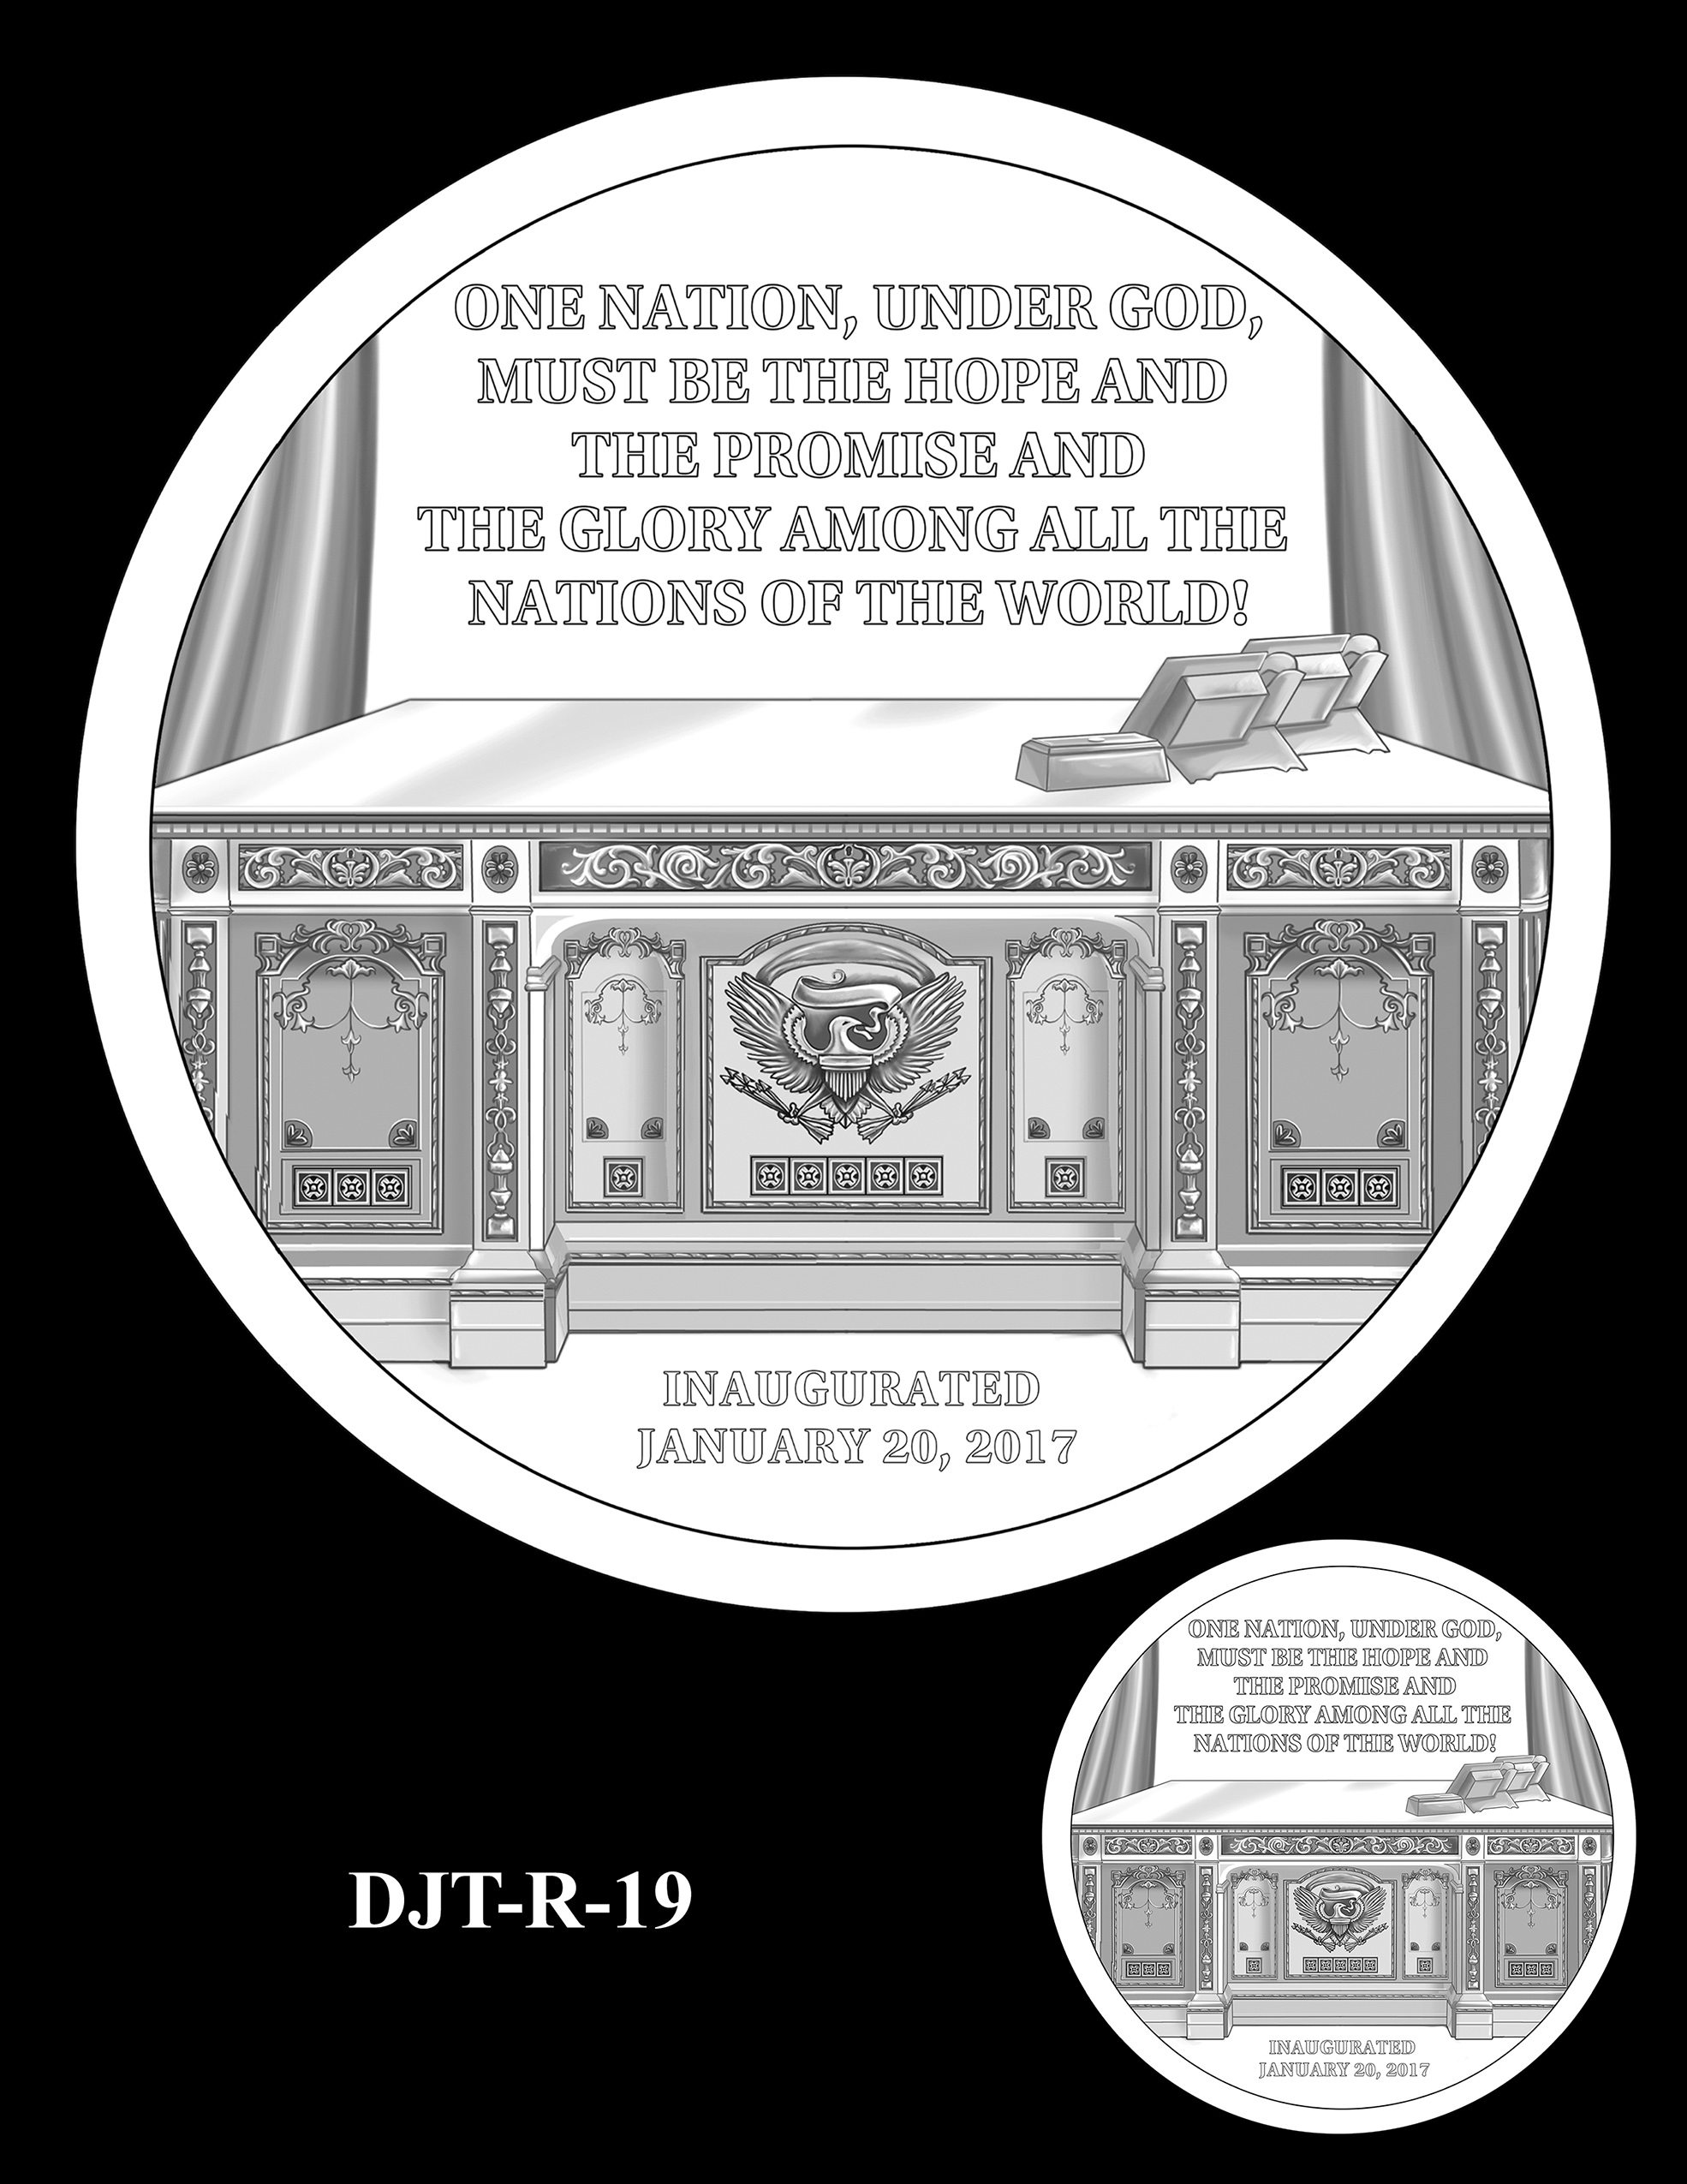 DJT-R-19 -- Donald J. Trump Presidential Medal